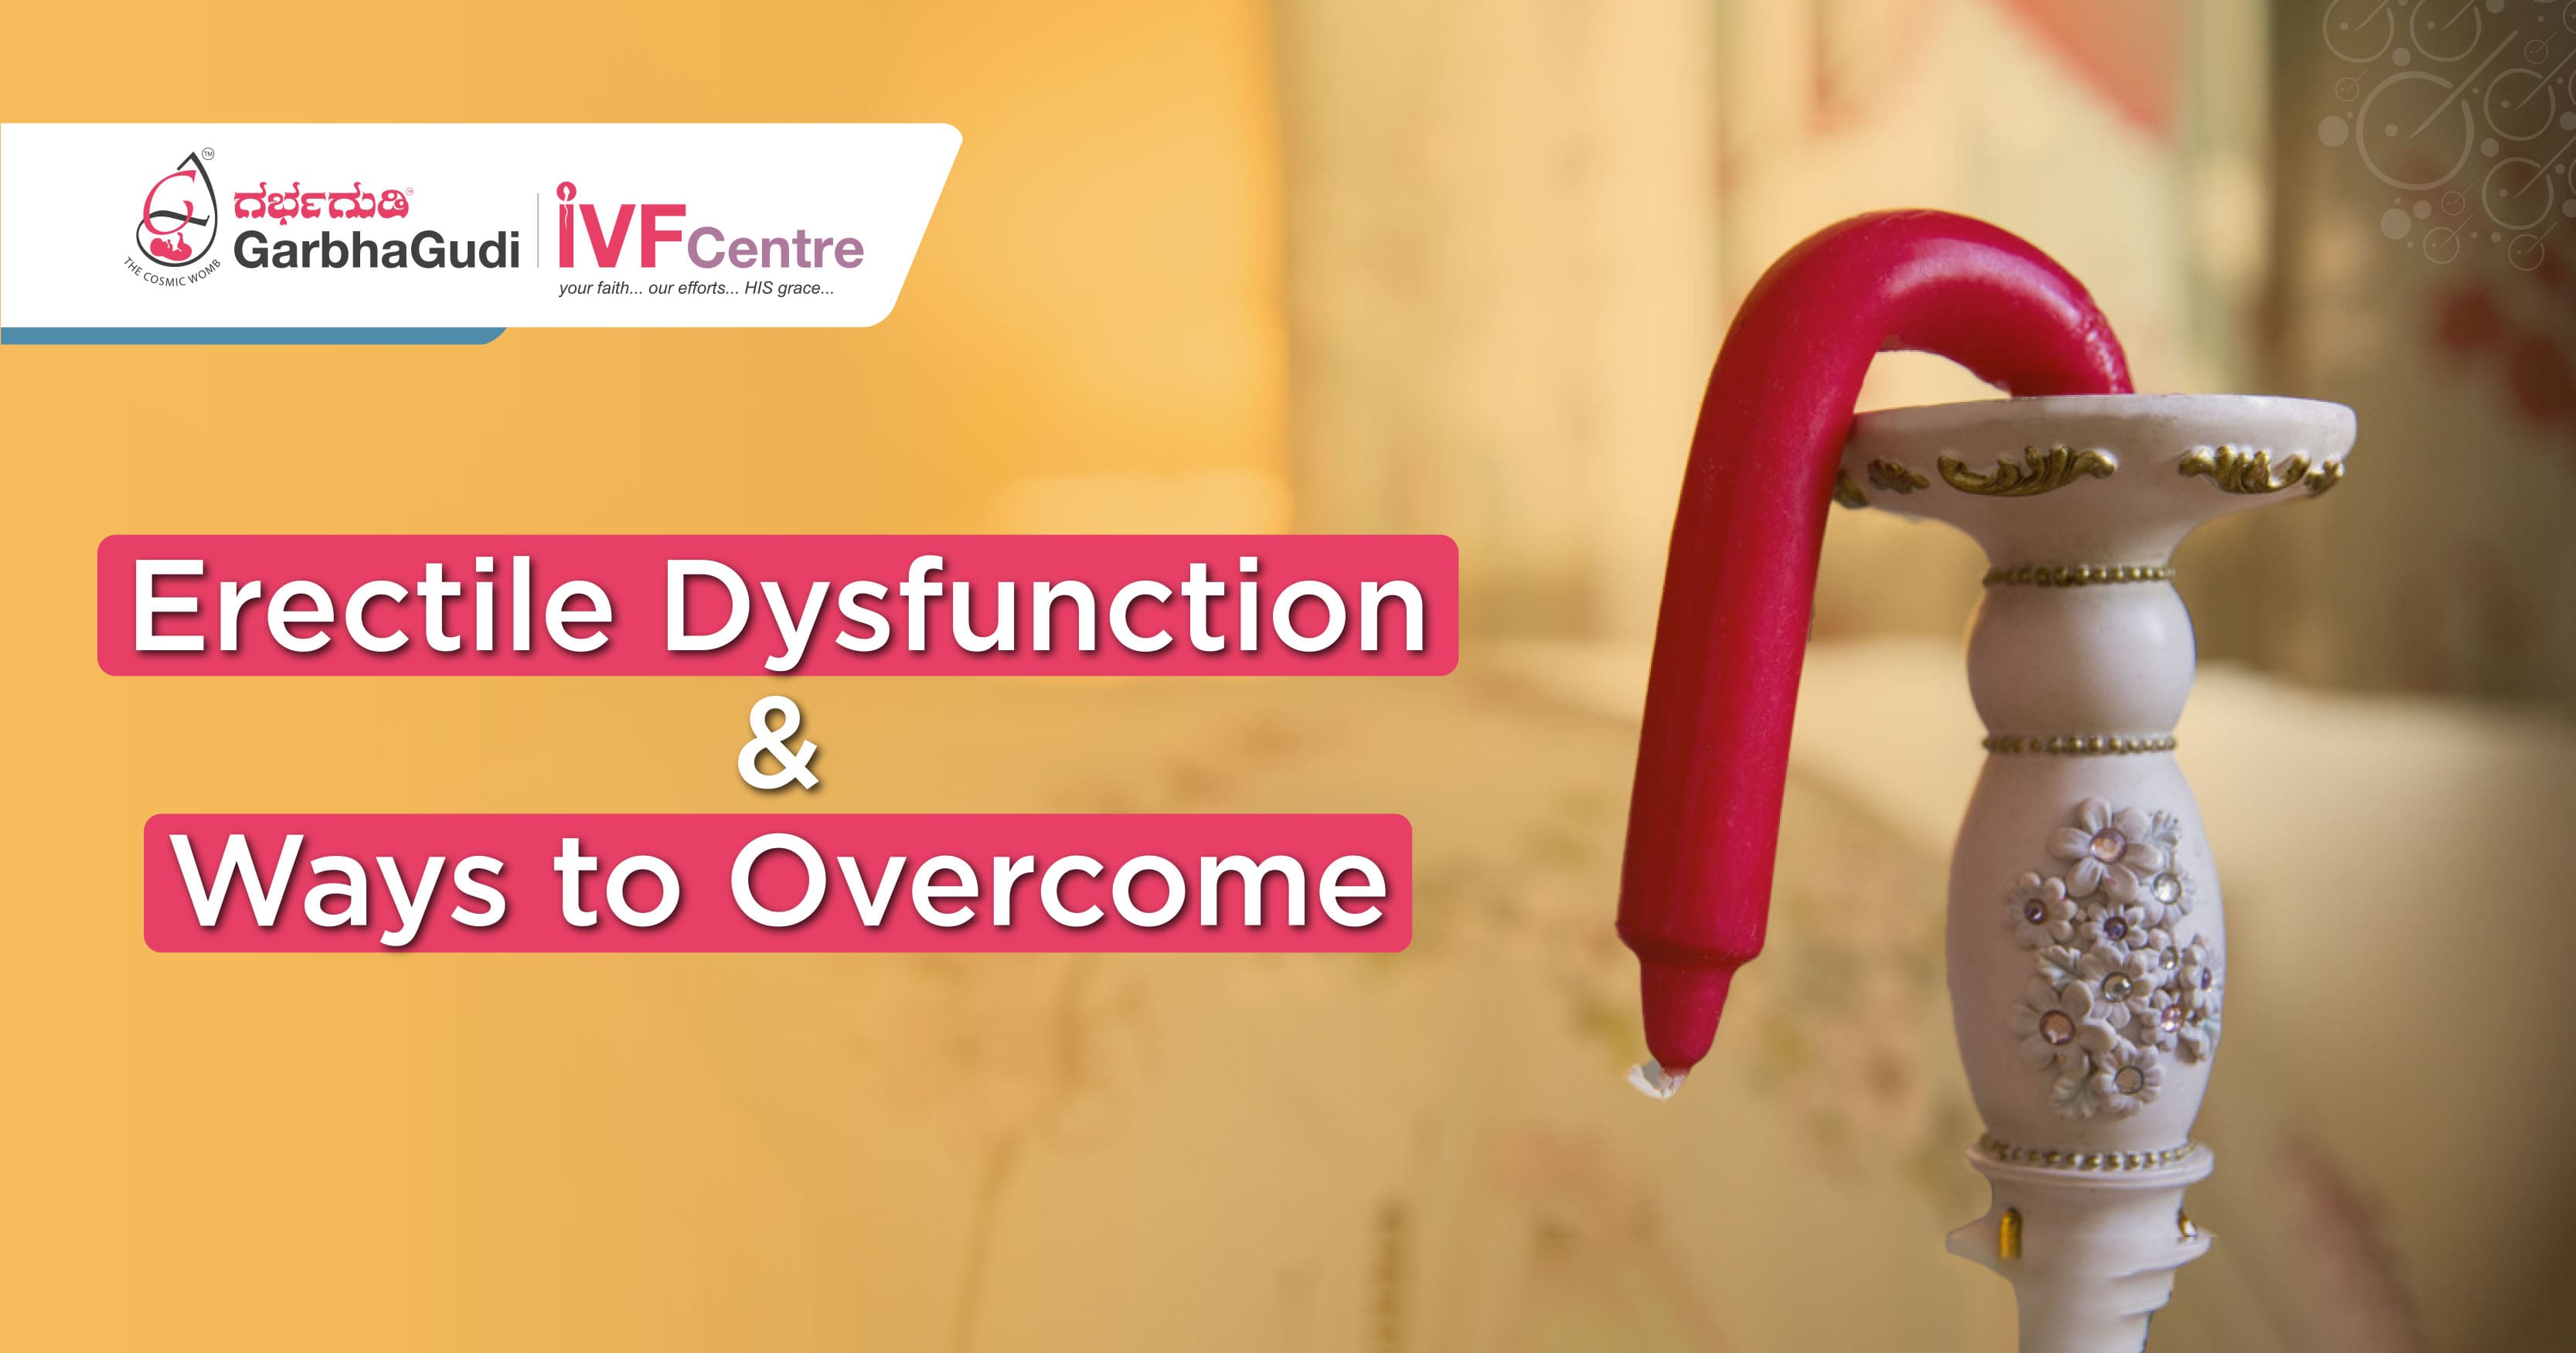 Erectile Dysfunction & Ways to Overcome